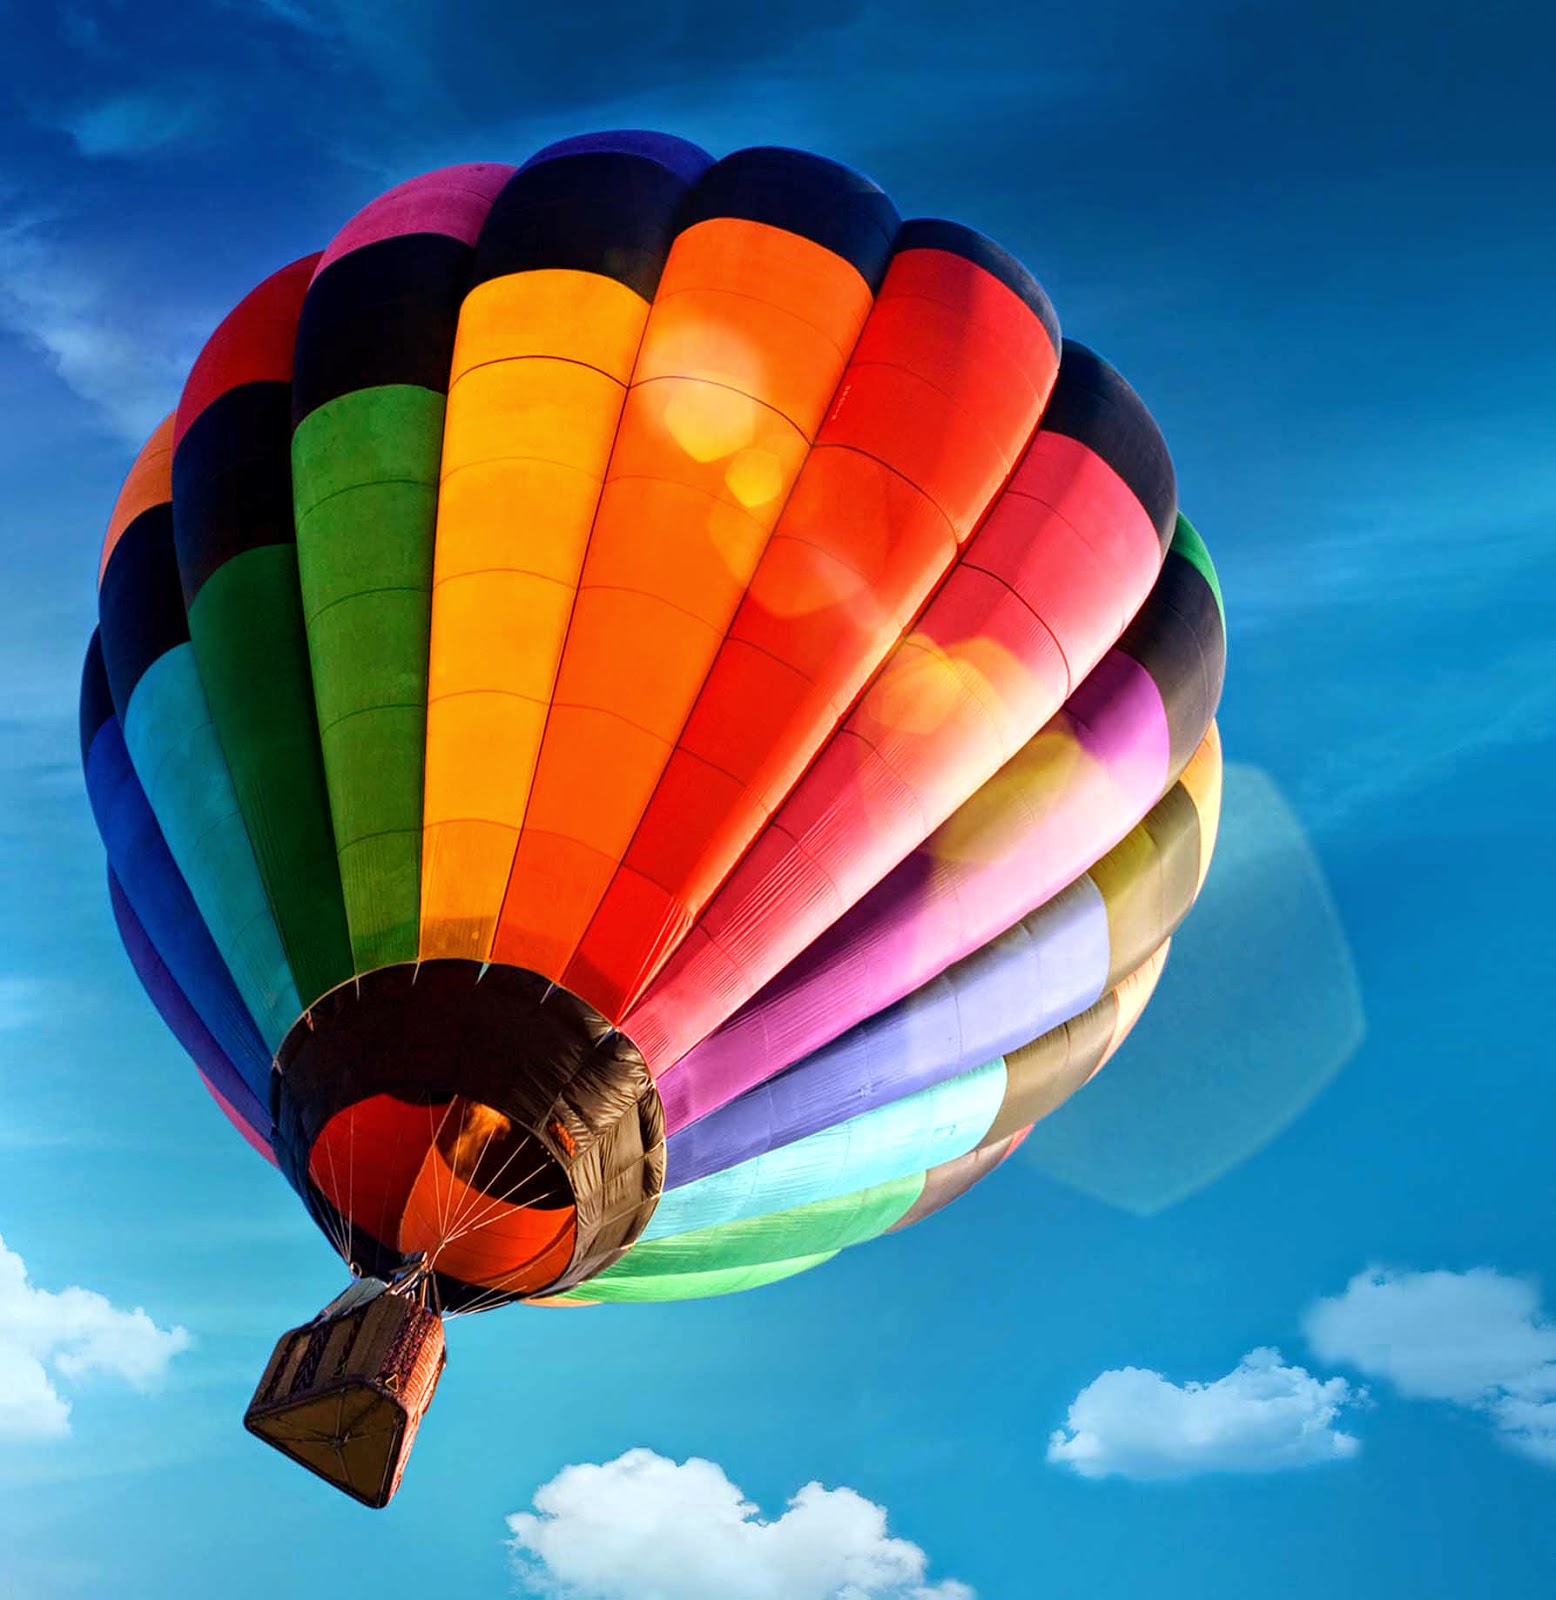 galaxy s3 live wallpaper,hot air ballooning,hot air balloon,air sports,sky,balloon